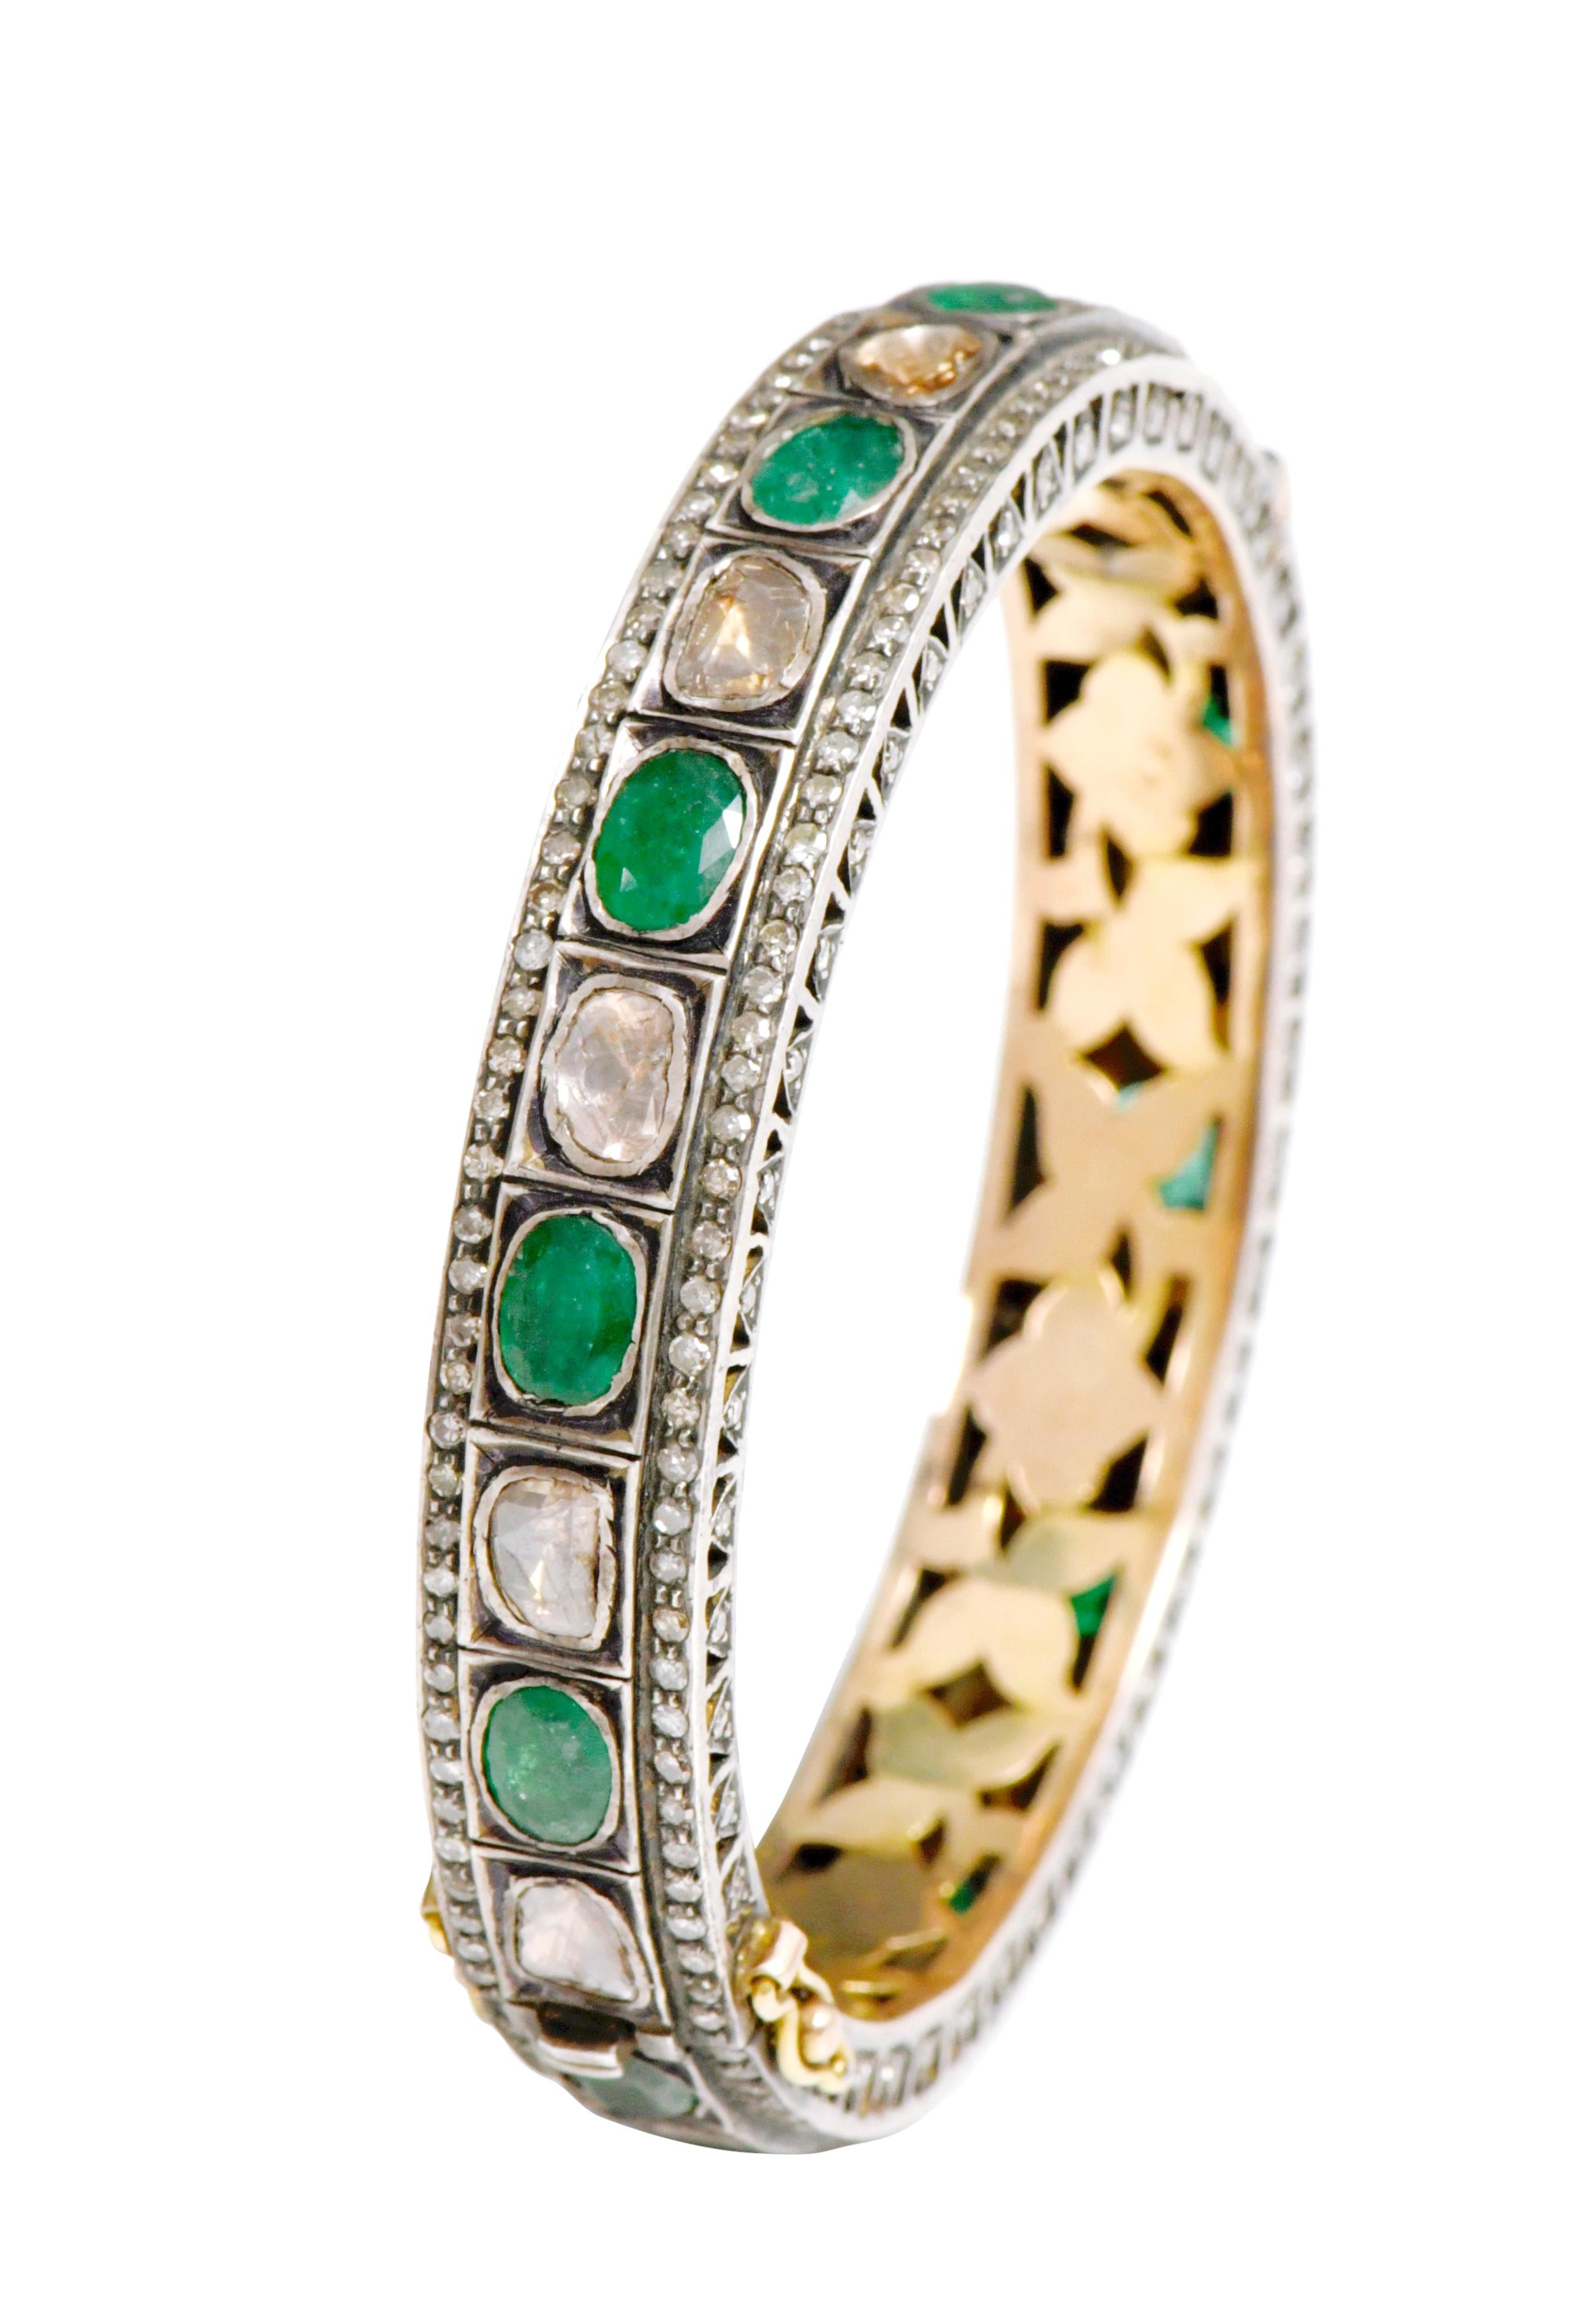 Tennisarmreif mit Diamant und natürlichem Smaragd im Art-Deco-Stil 

Dieser Armreif aus der viktorianischen Epoche des Art déco mit Polki-Diamanten und waldgrünen Smaragden ist unglaublich. Die ungleichmäßigen Solitärdiamanten im Dreiecks- und